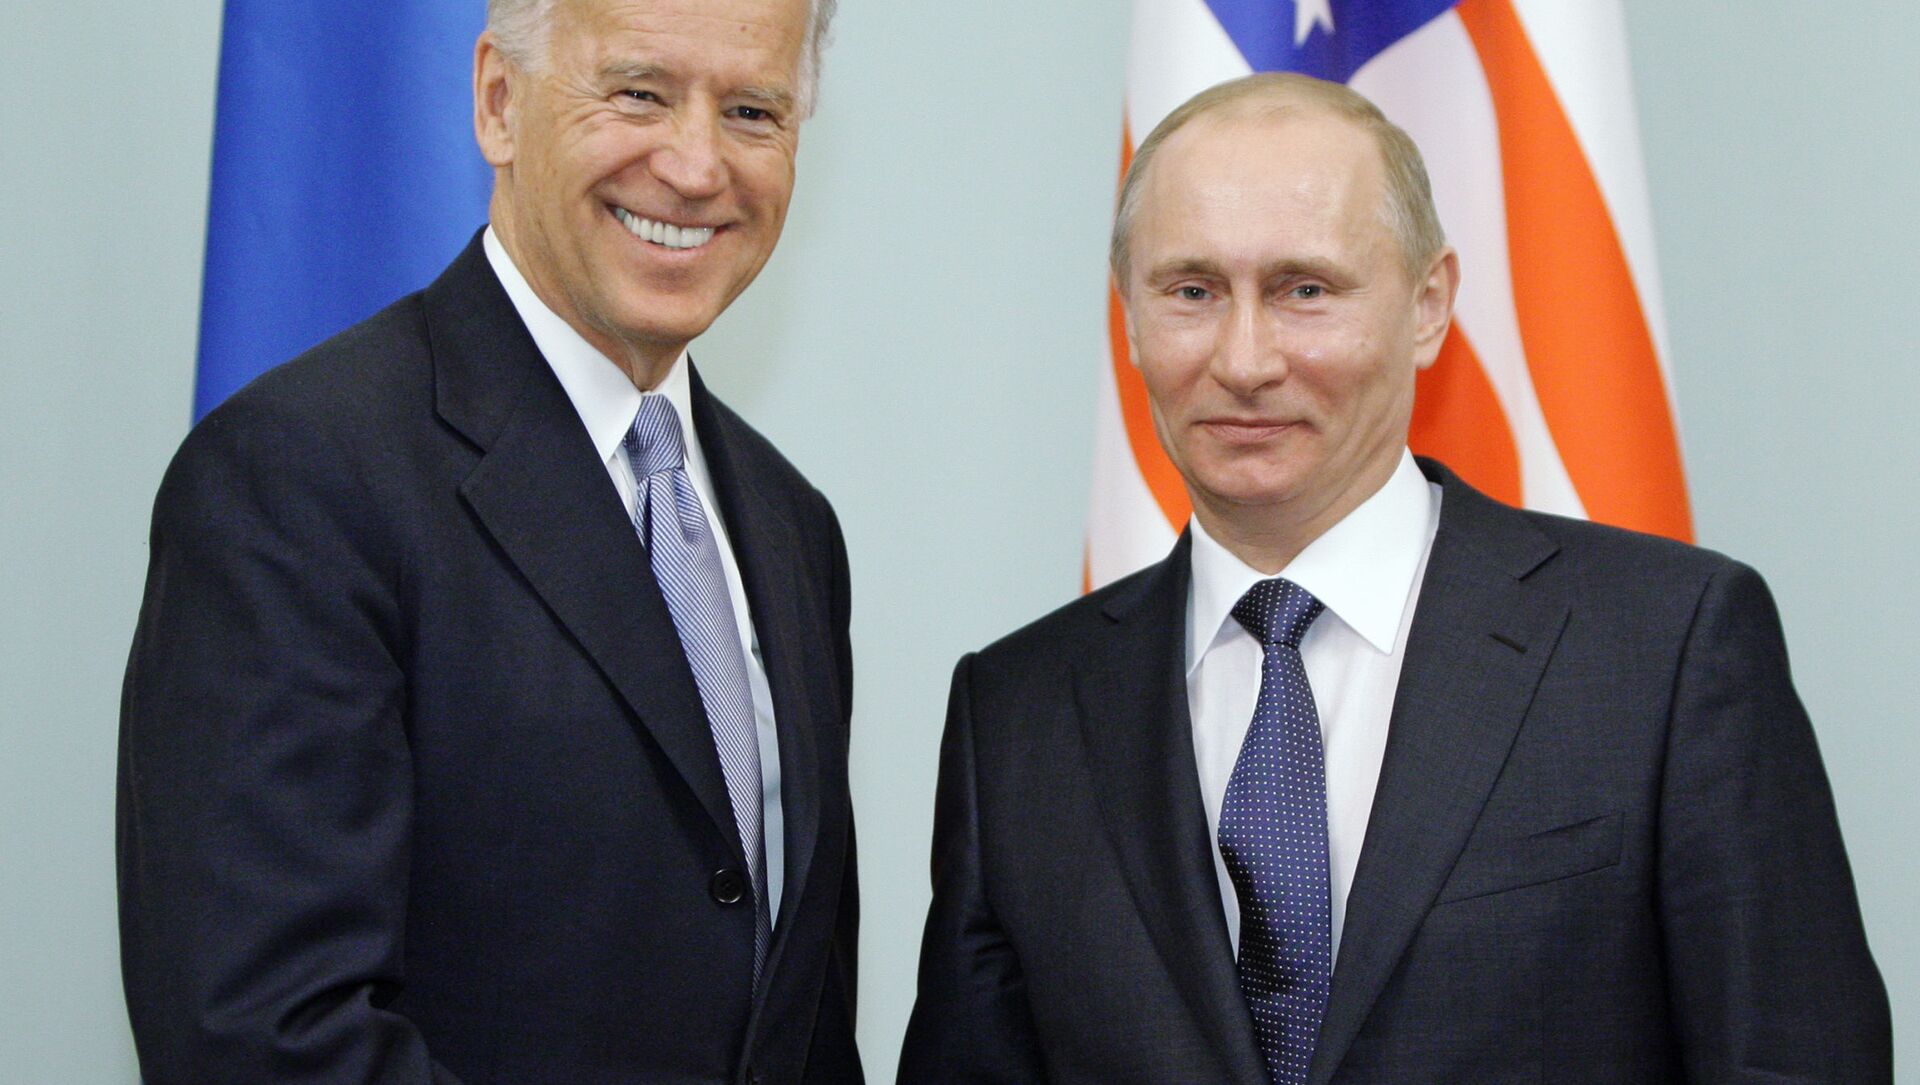  Председатель правительства РФ Владимир Путин во время встречи с вице-президентом США Джозефом Байденом, 2011 год  - Sputnik Южная Осетия, 1920, 29.05.2021